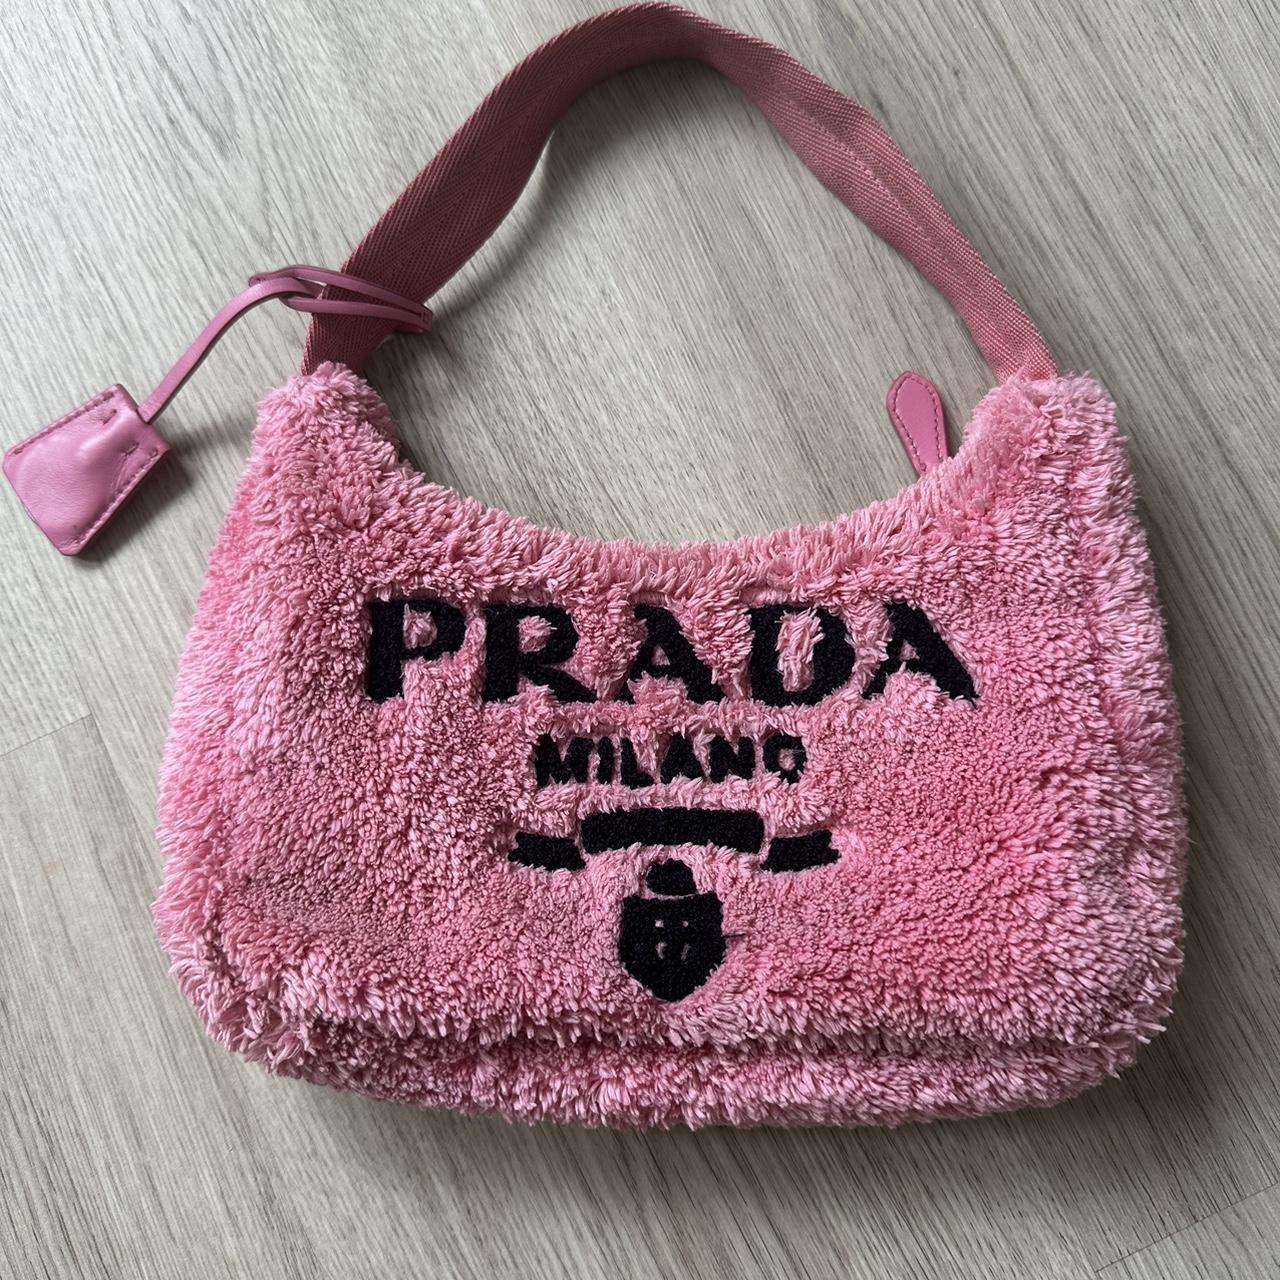 Pink prada-mini-bag - Depop